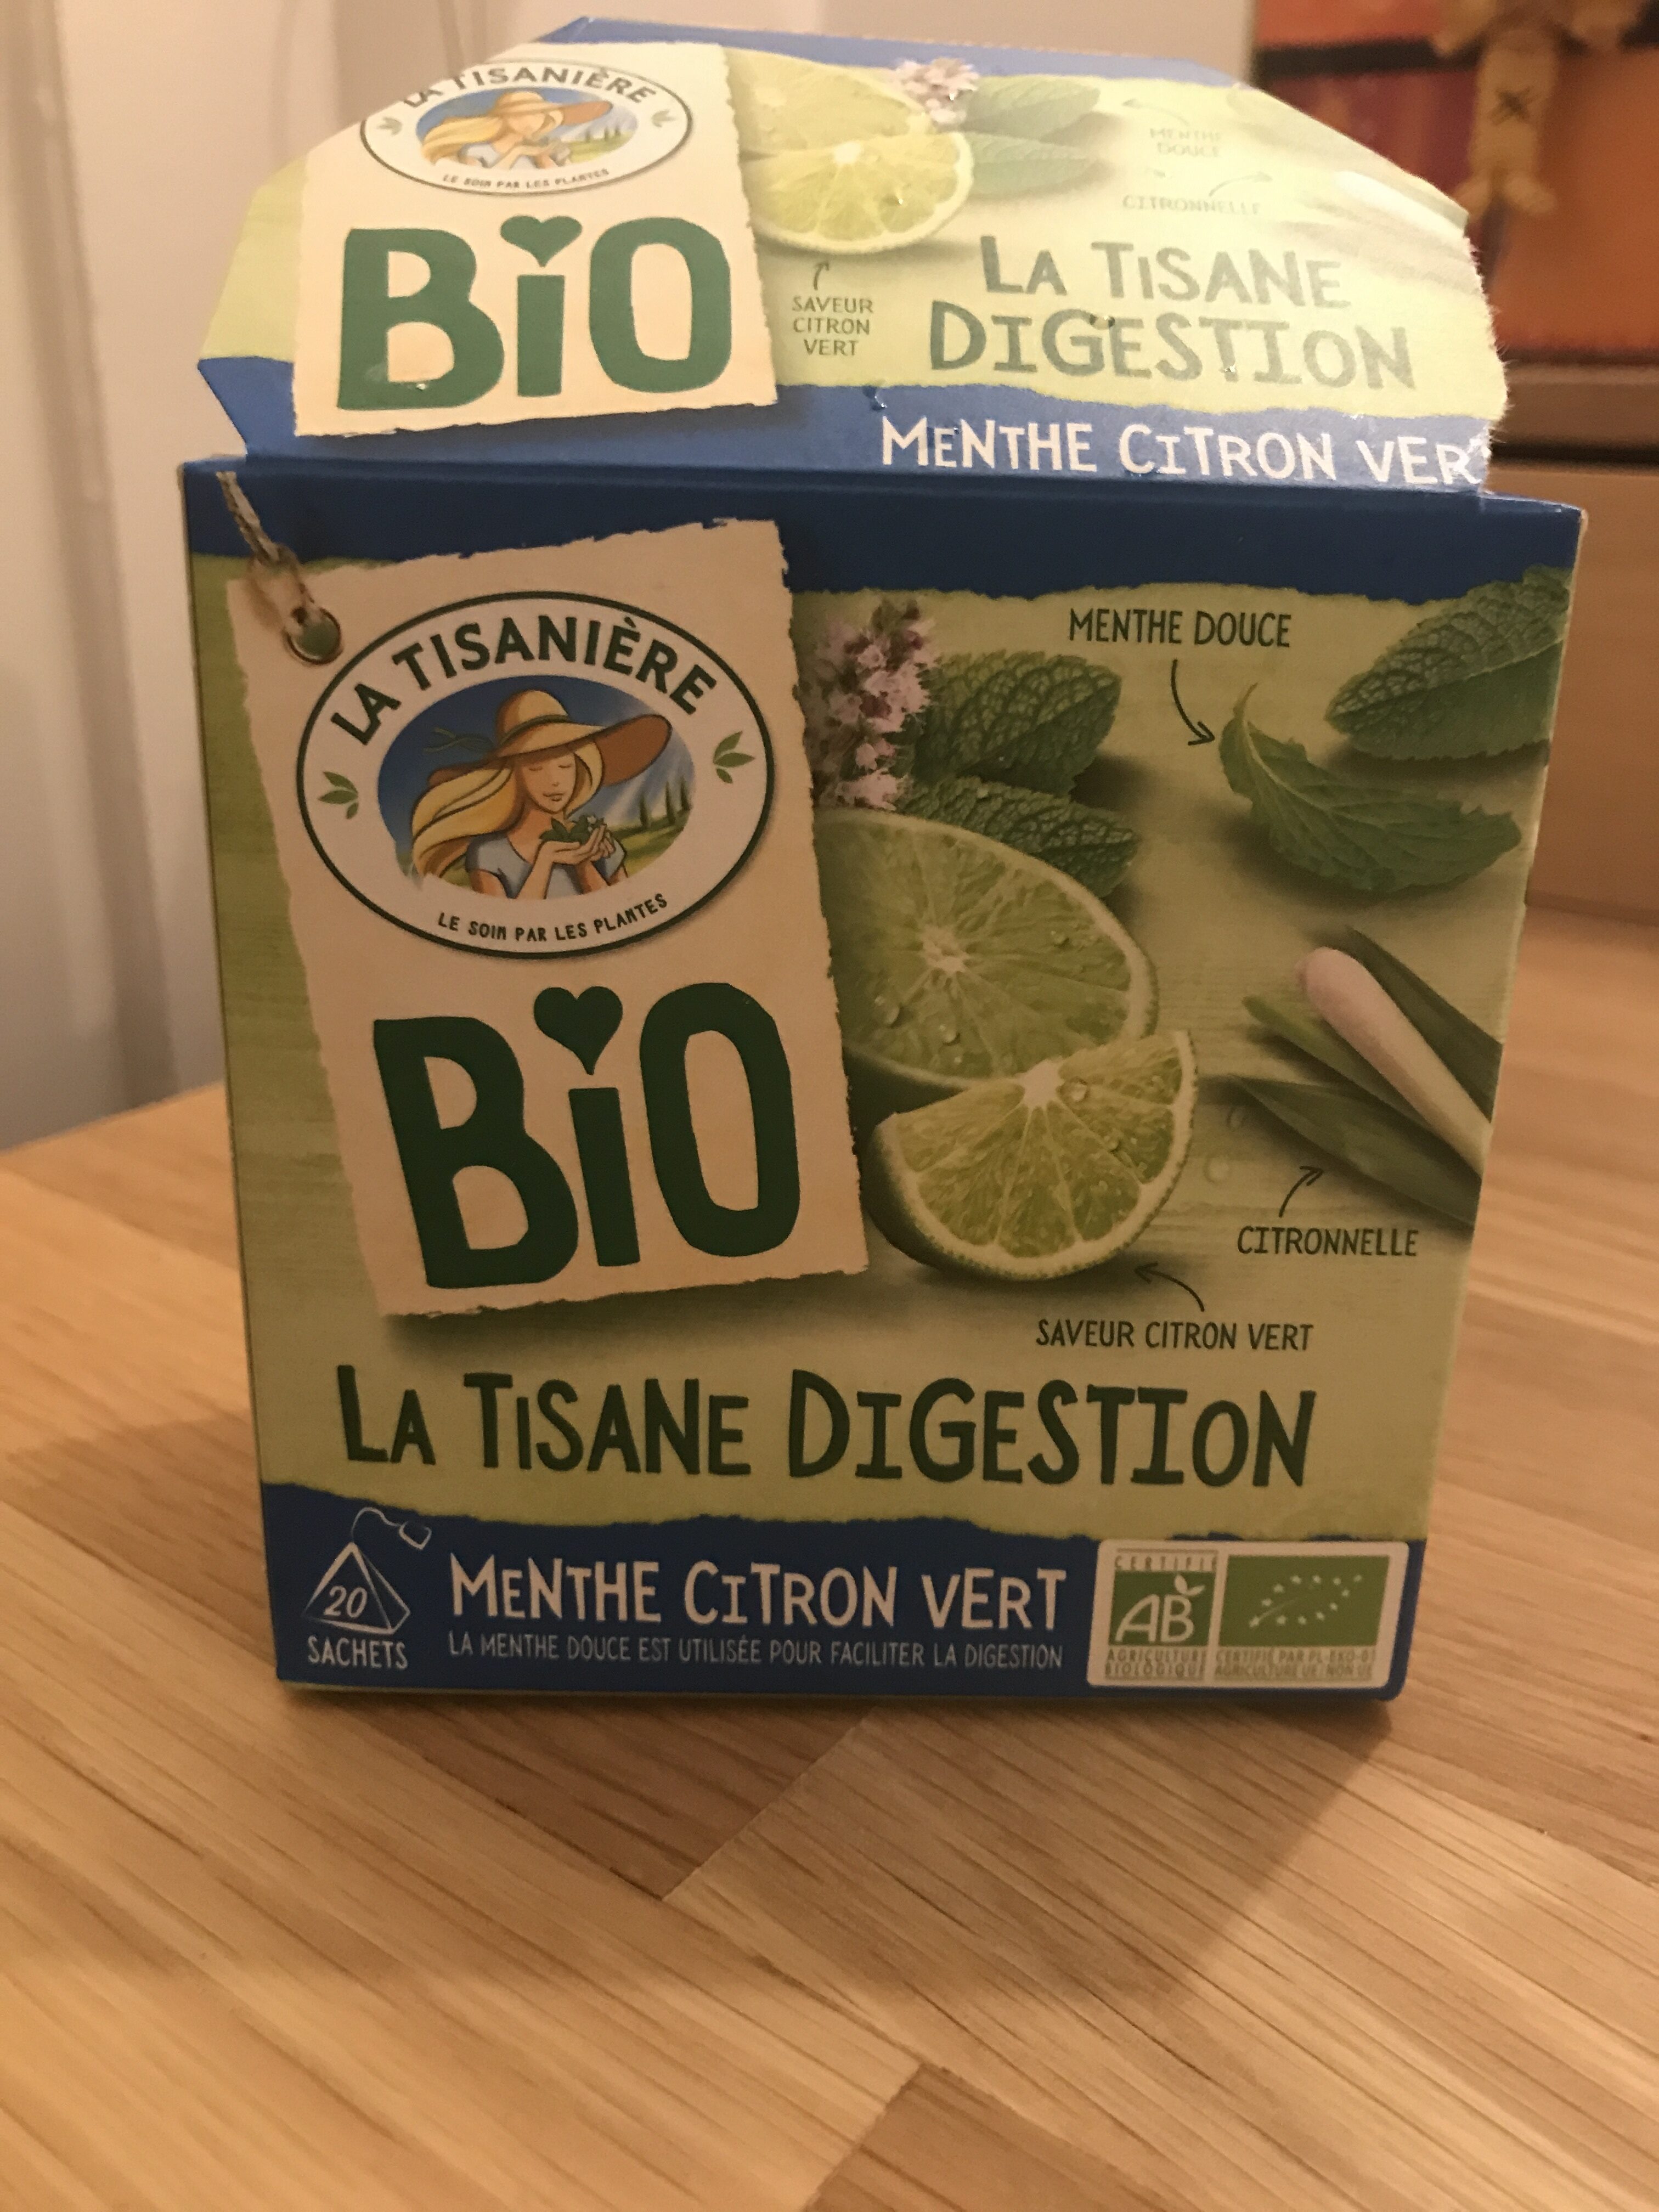 La tisane digestion menthe citron vert - Produit